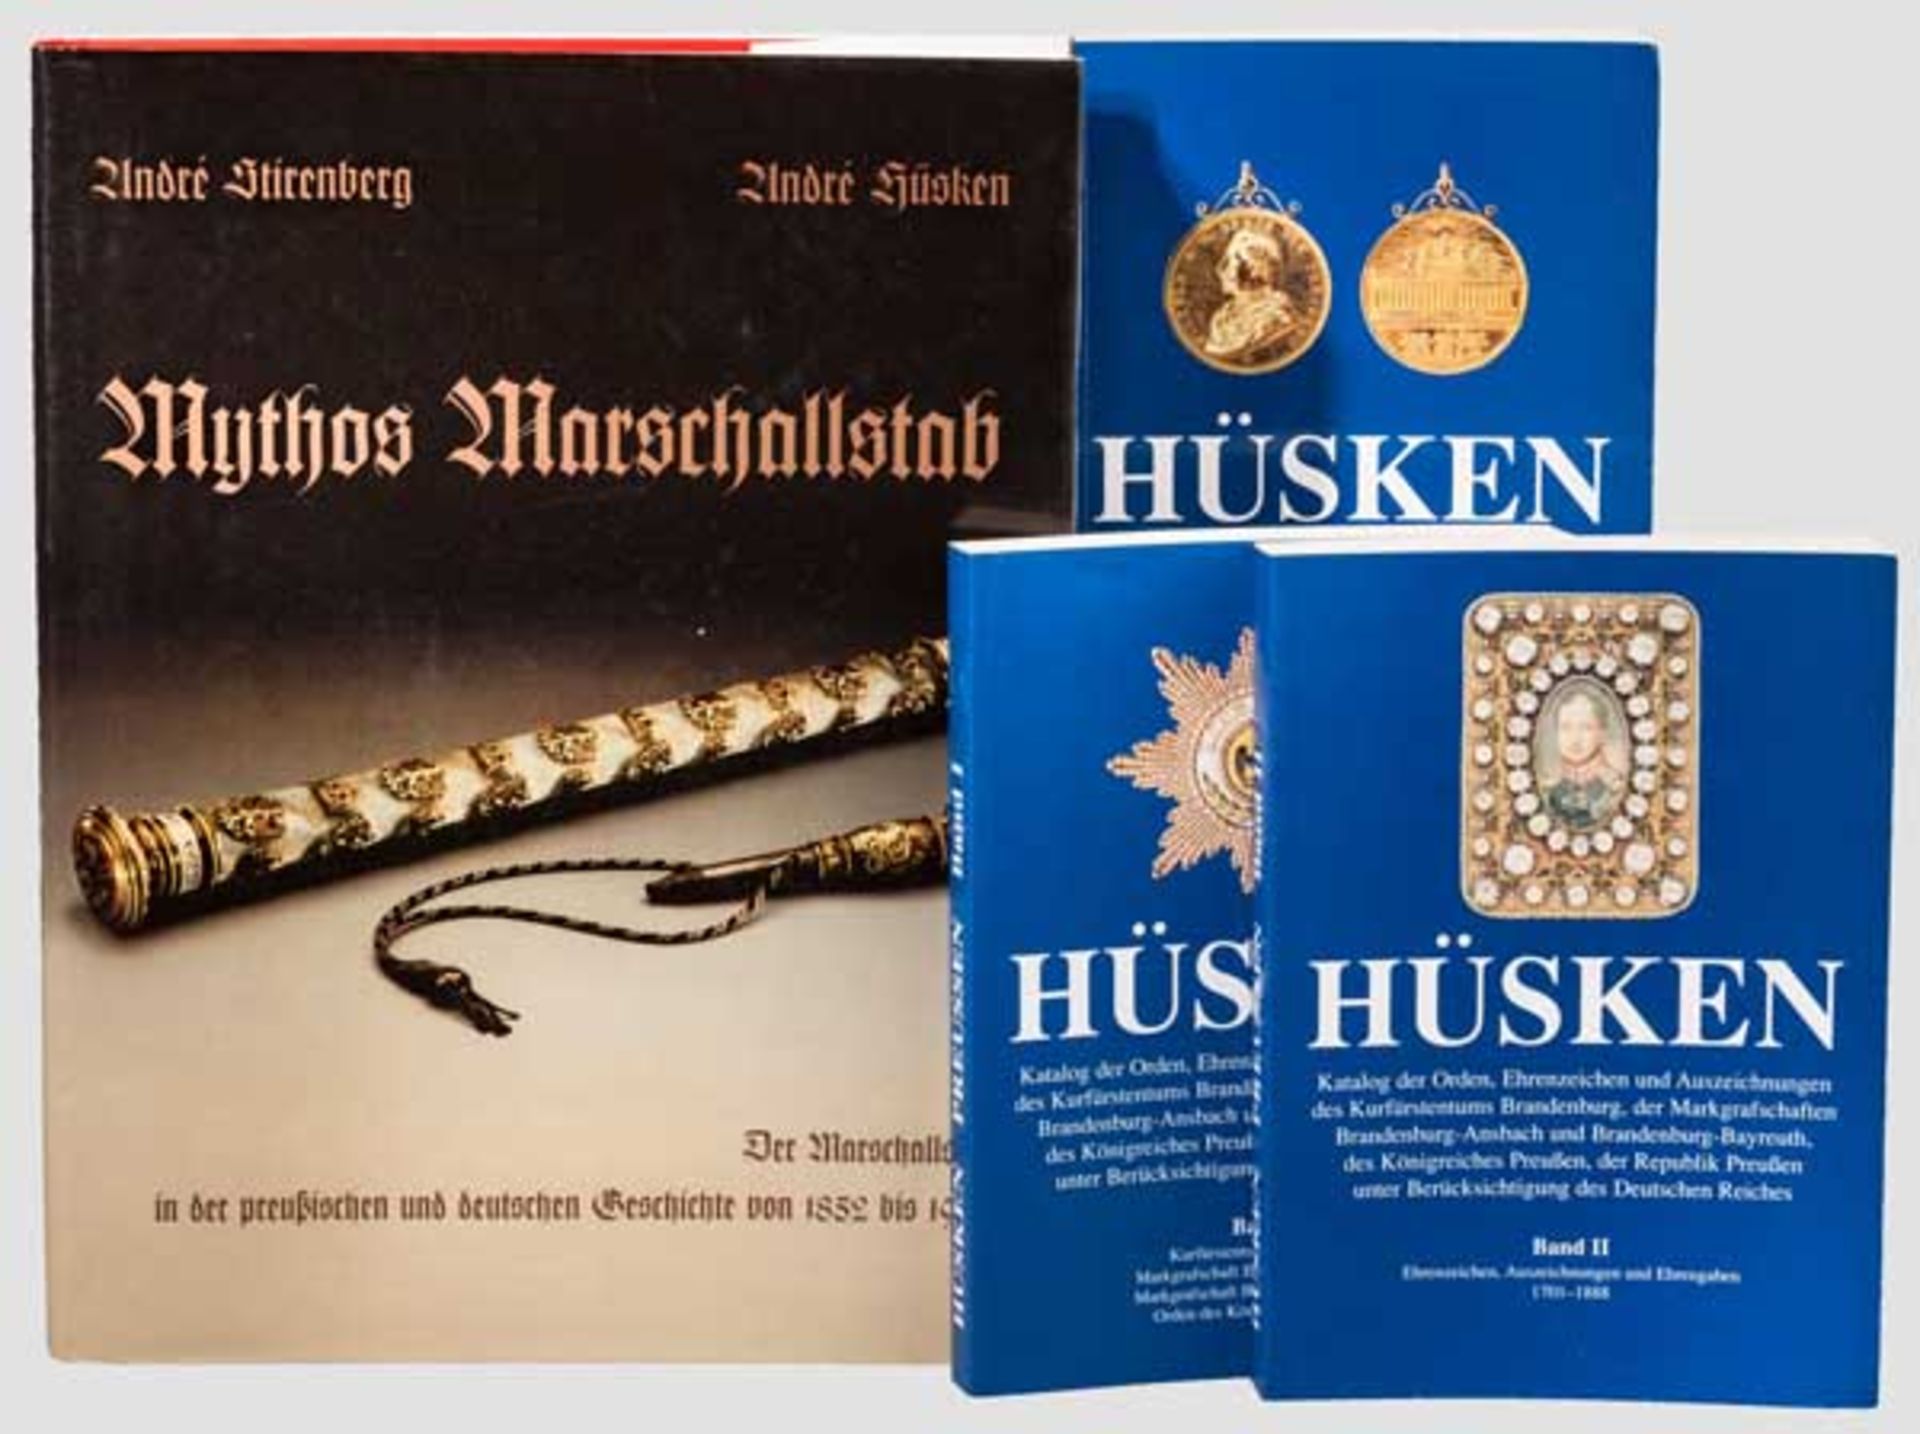 Konvolut Fachliteratur Buch "Mythos Marschallstab" von André Hüsken, mit Widmung. Dazu der